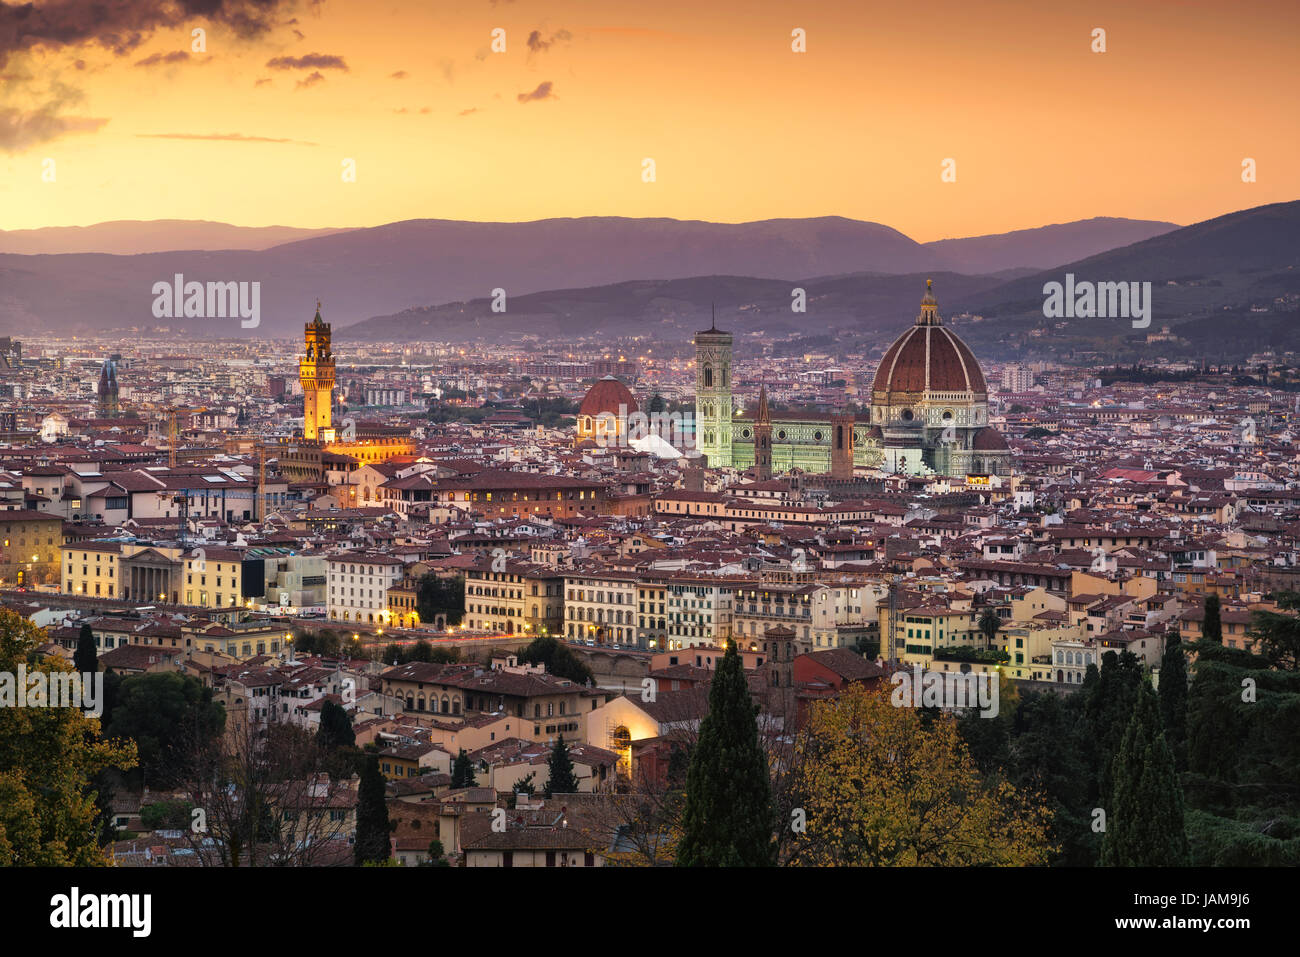 Florenz oder Firenze Sonnenuntergang Luftaufnahme Stadtbild. Palazzo Vecchio und Dom. Toskana, Italien Stockfoto